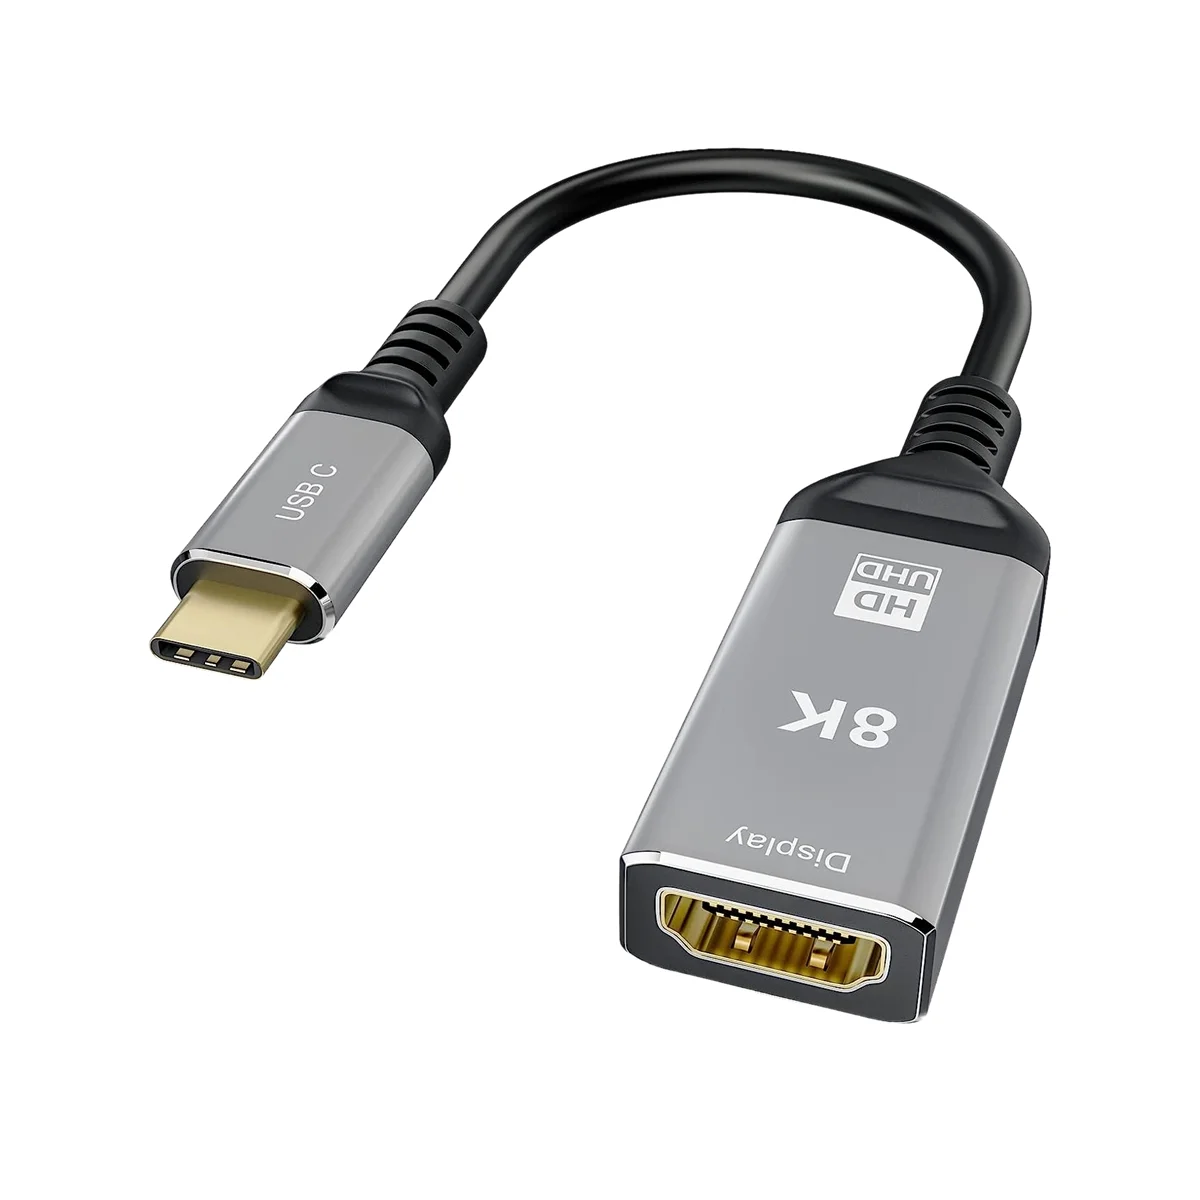 

Адаптер с USB C на HDMI-совместимый, 4K 120 Гц, 8K 60 Гц, USB Type C на HDMI-совместимый адаптер 2,1 с поддержкой скорости передачи 48 Гбит/с